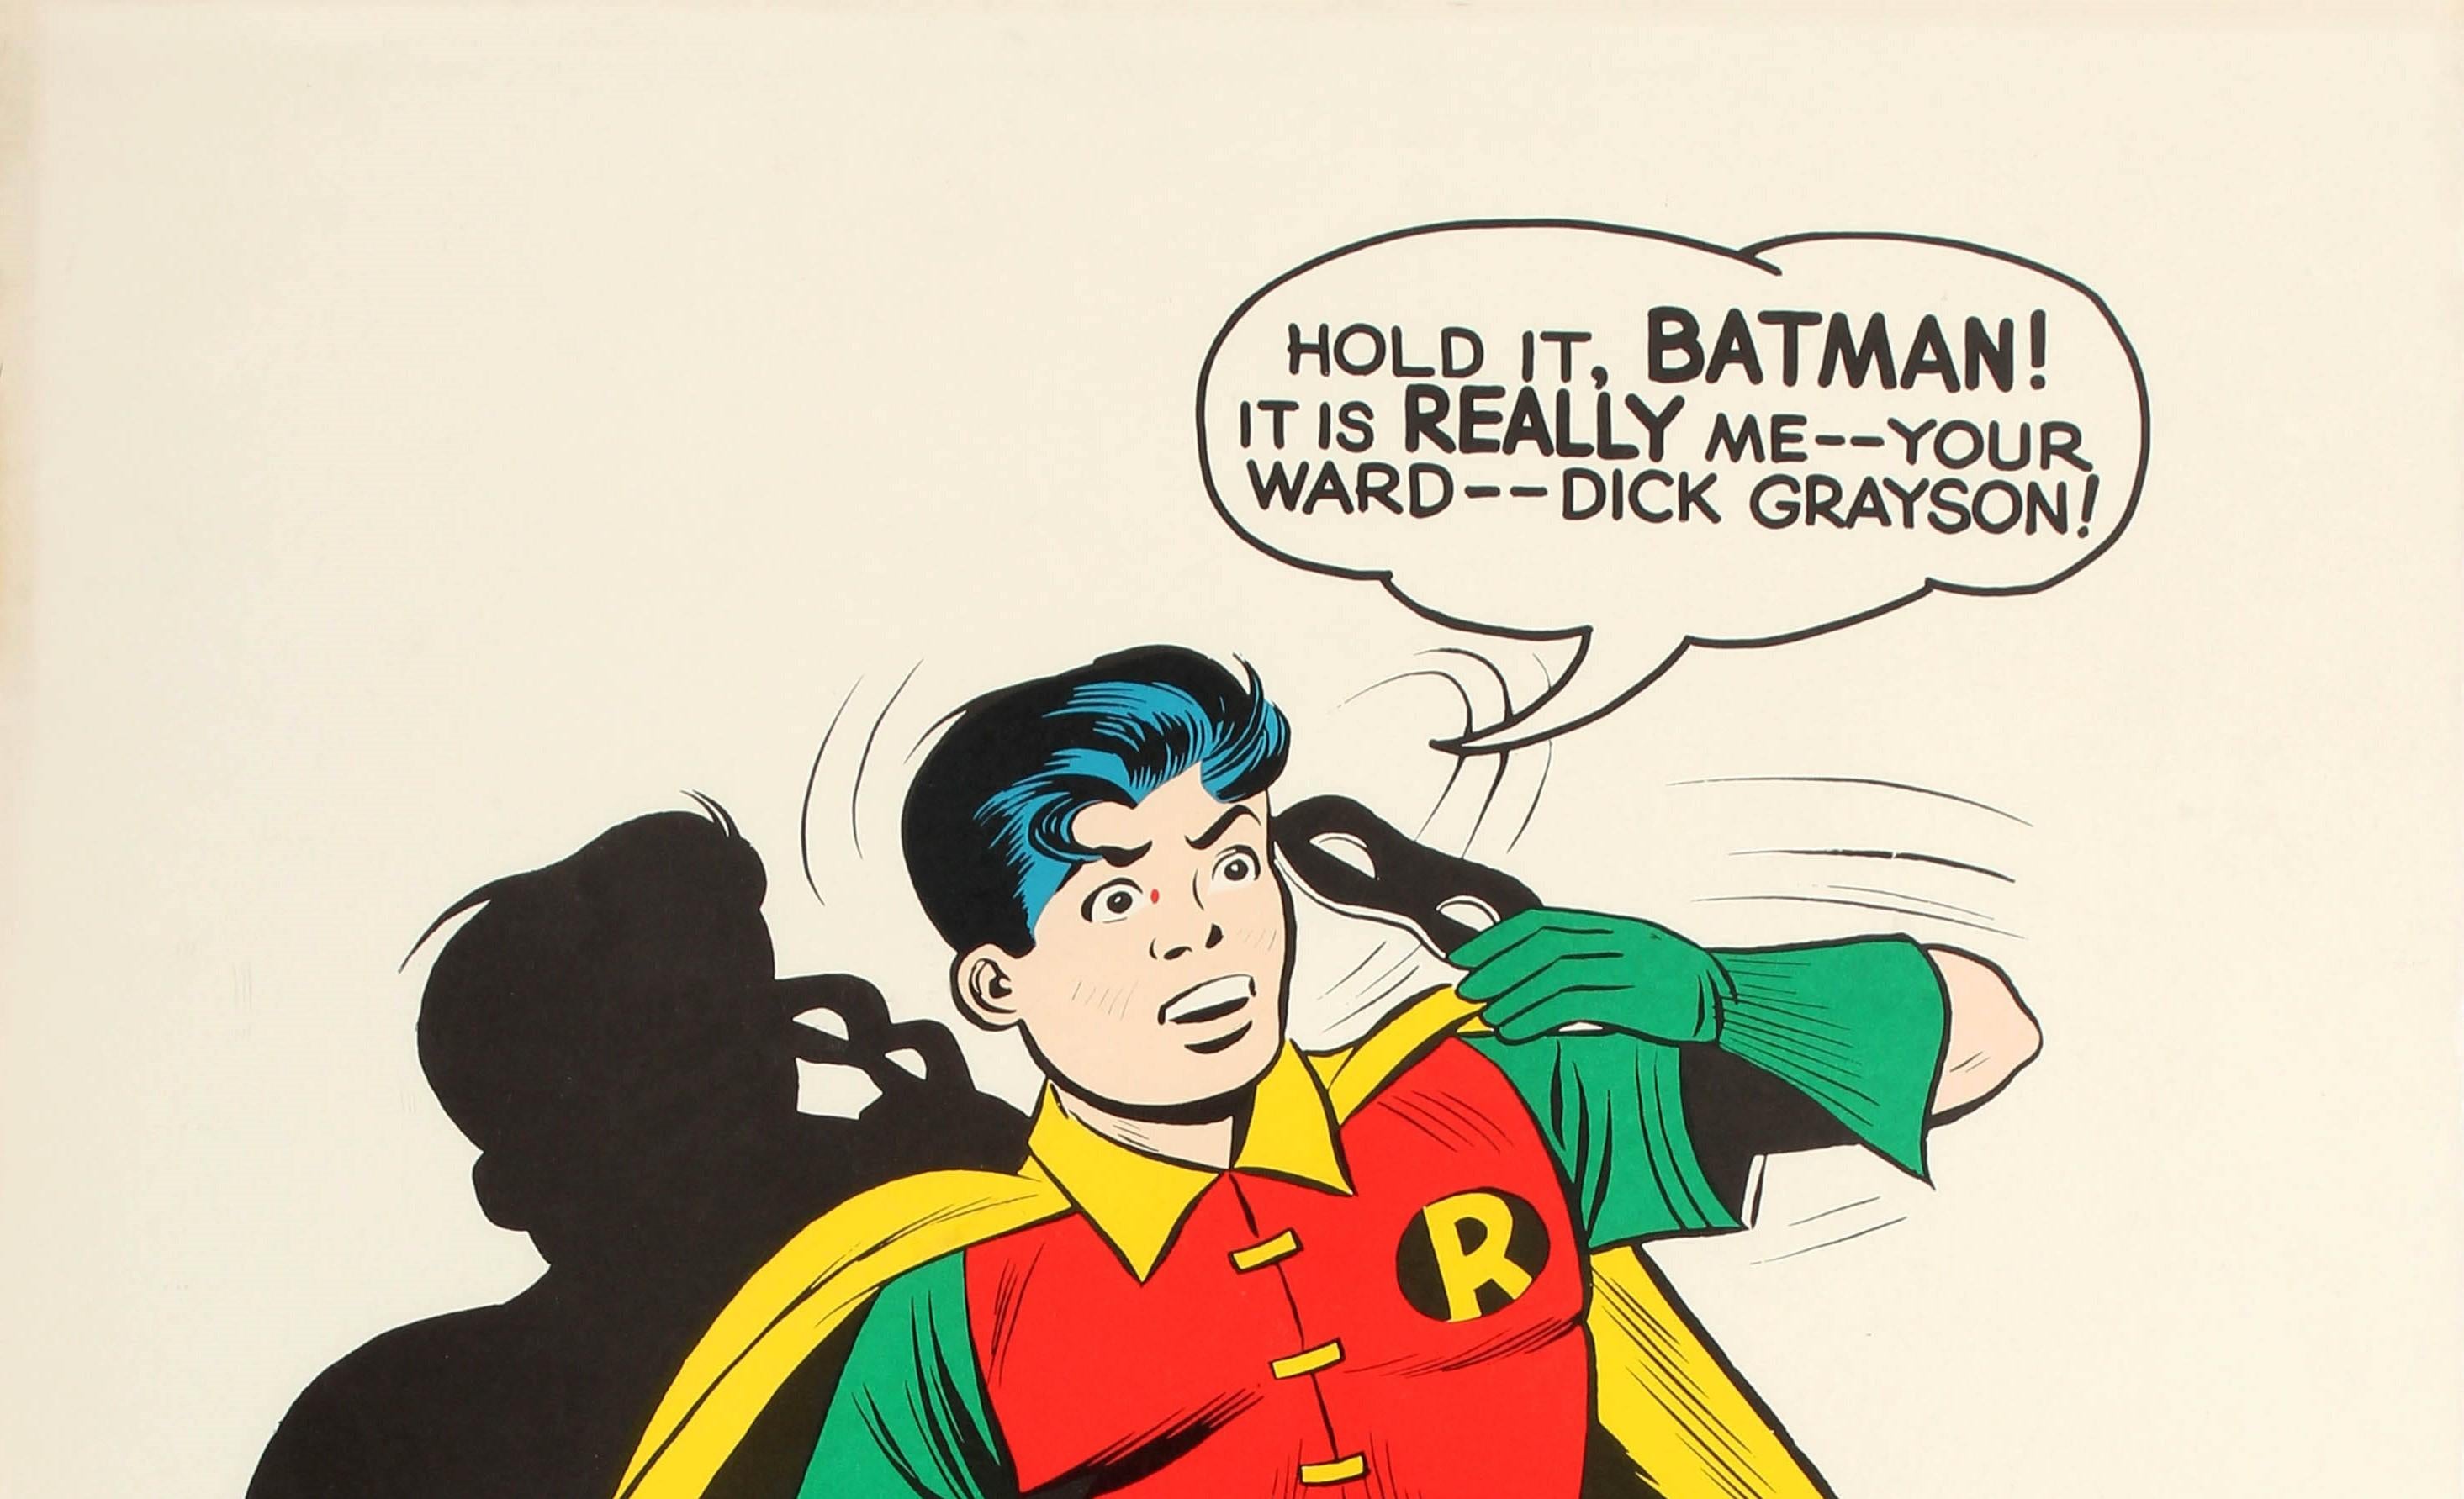 Affiche de dessin animé Batman originale et vintage présentant une illustration colorée du célèbre acolyte du jeune super-héros de la bande dessinée, Robin, vêtu de son costume rouge et vert emblématique inspiré de Robin des Bois et orné d'un badge